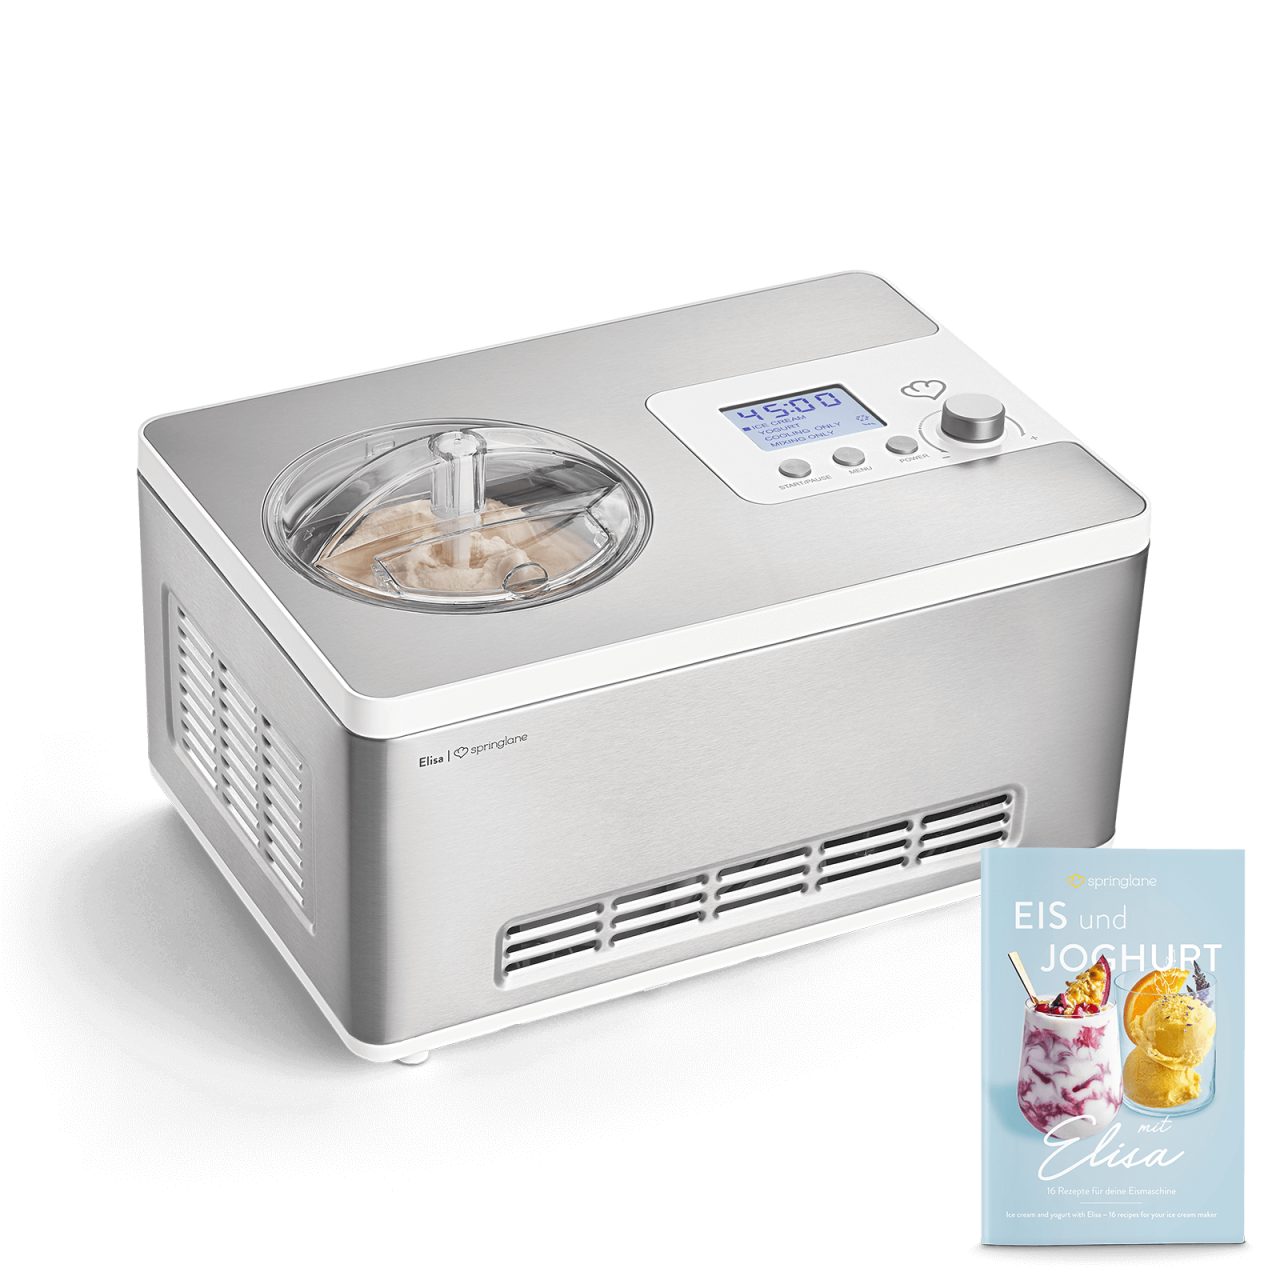 Springlane Eismaschine Elisa, 2-in-1 Eismaschine und Joghurtbereiter, 180  W, Eiscrememaschine & Joghurtbereiter inkl. Rezeptheft